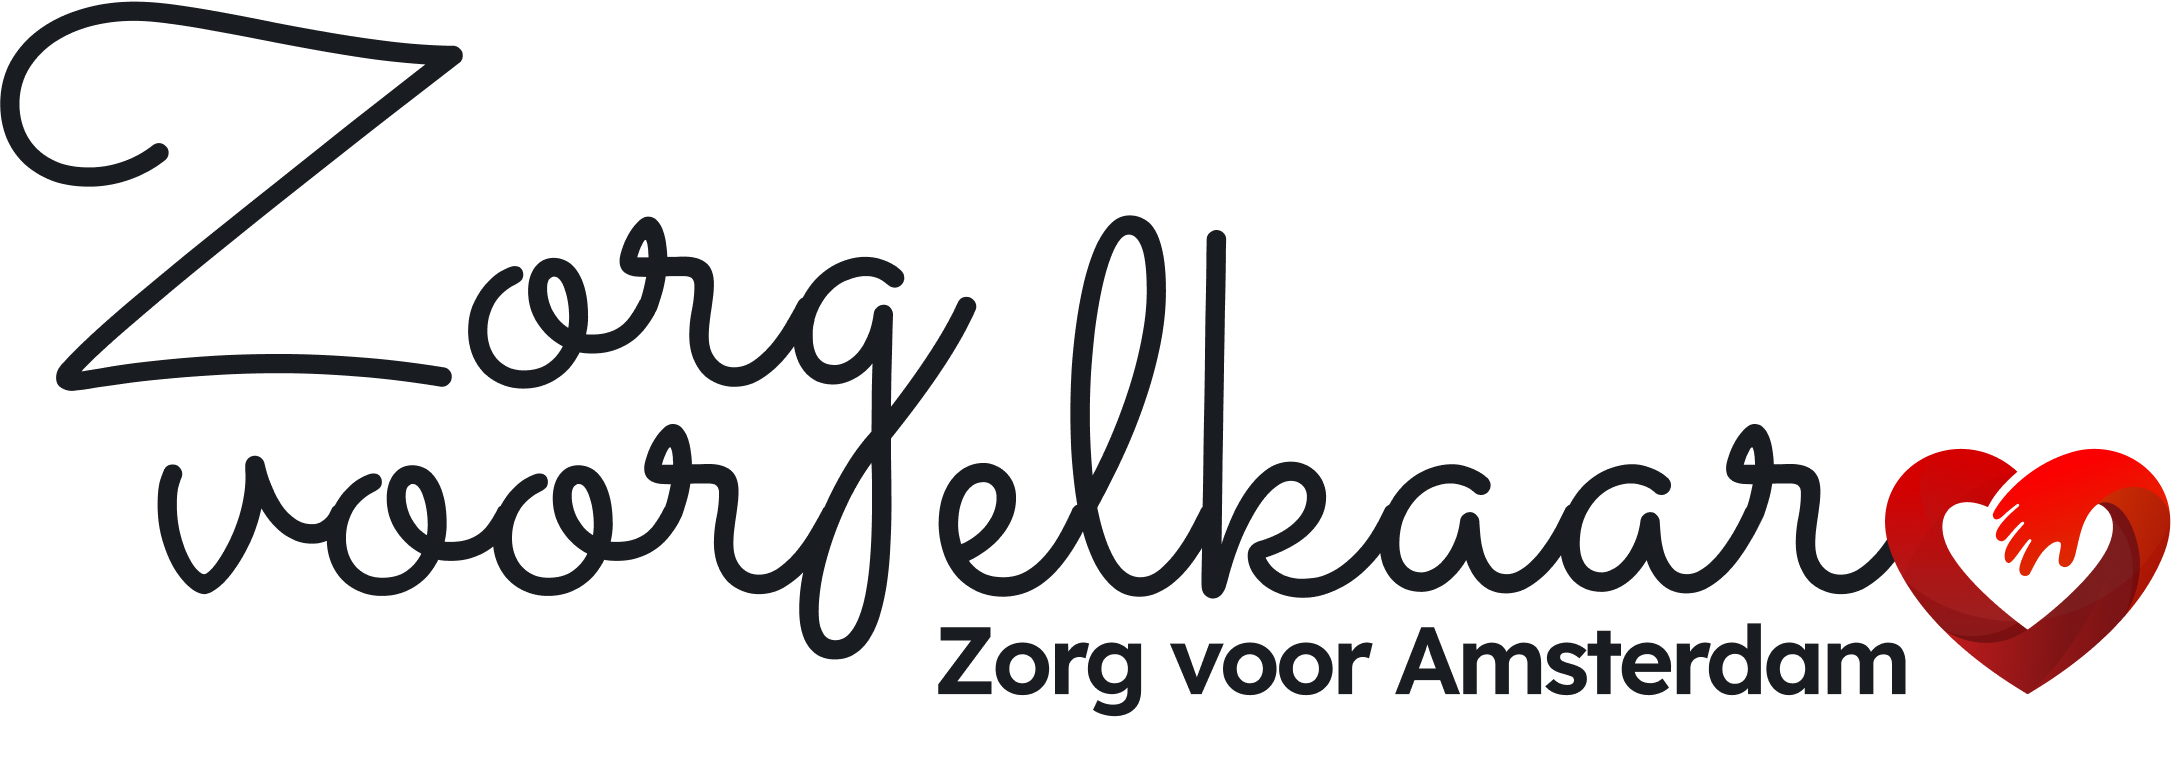 Zorg voor elkaar, zorg voor amsterdam - Logo